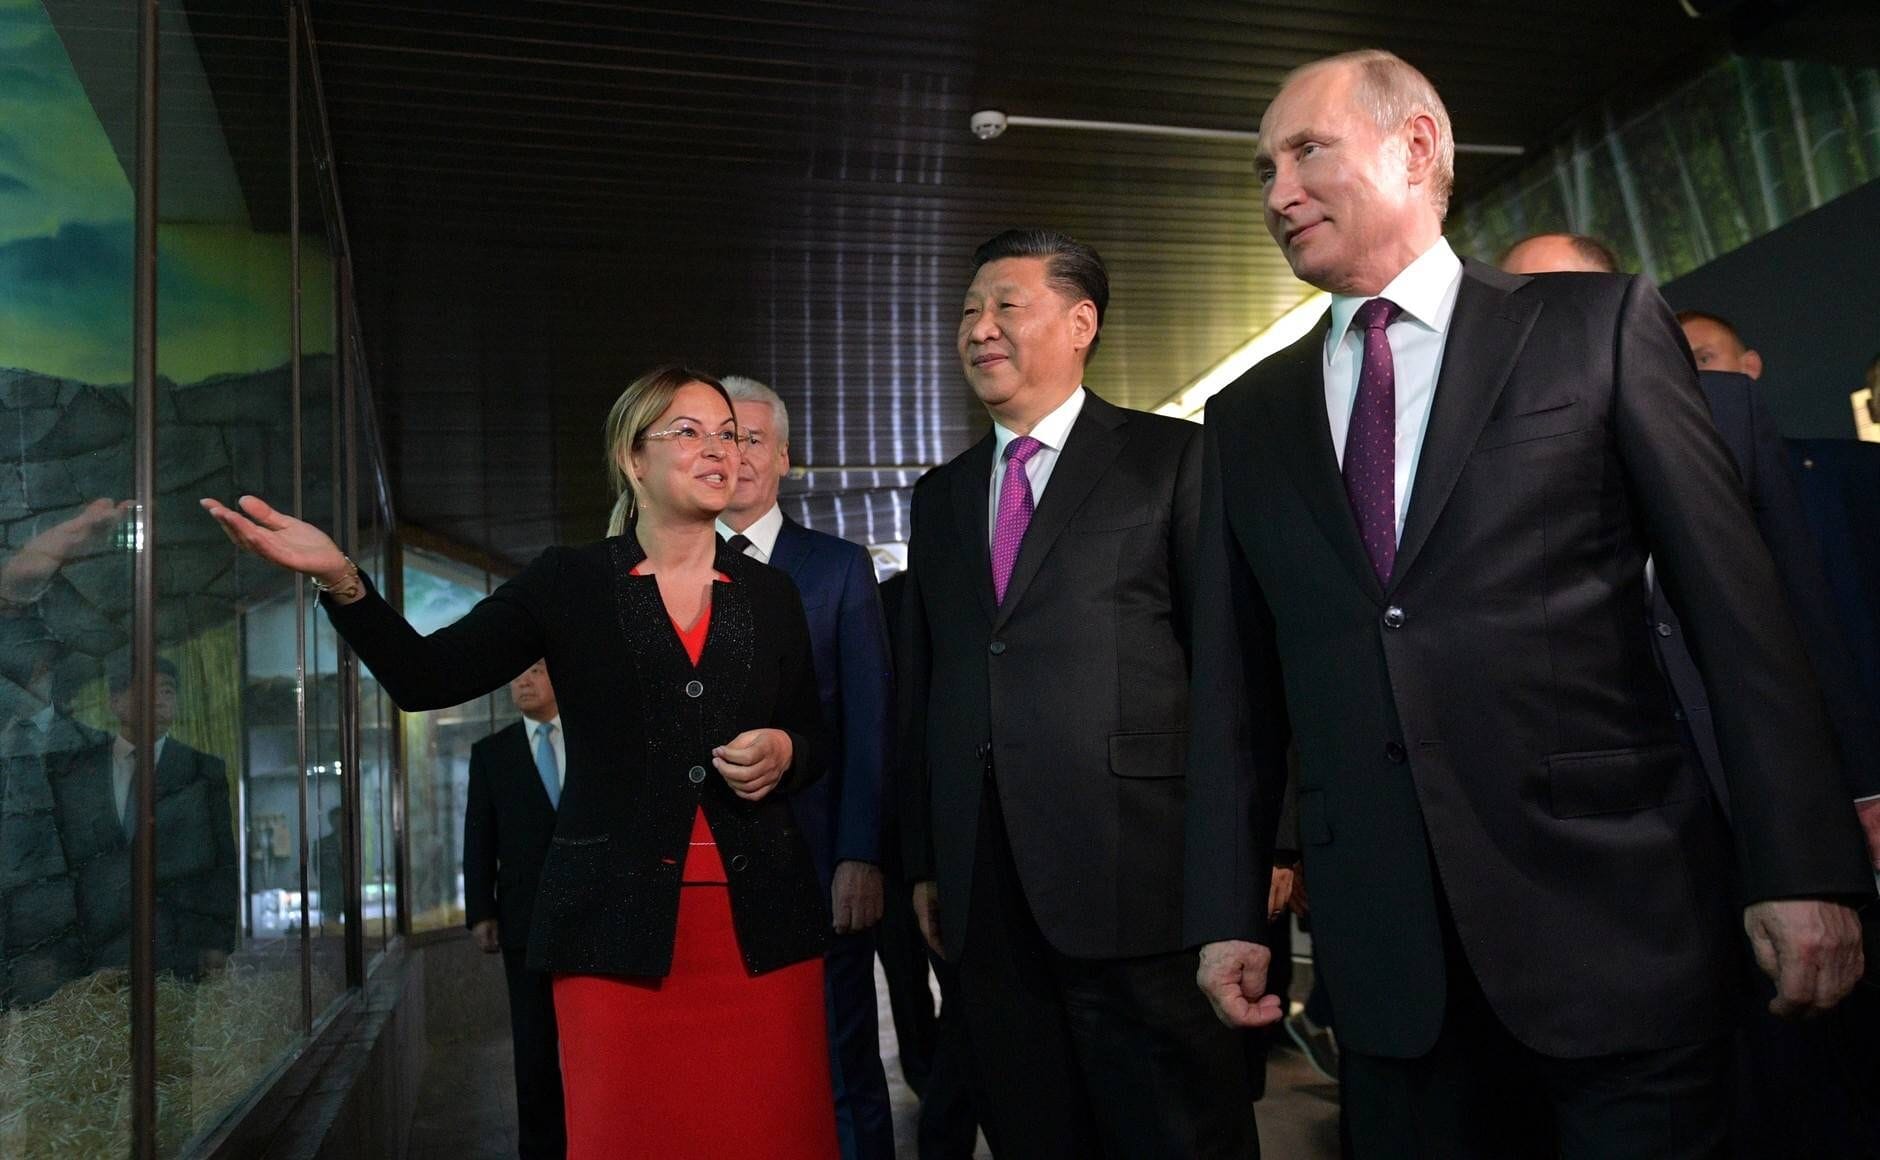 Bei den gemeinsamen Aktivitäten darf auch ein Besuch im Zoo nicht fehlen. 2019 besuchten Xi und Putin den Moskauer Zoo, wo ein Panda-Pavillon eröffnet wurde. Der Pavillon wurde für die Ankunft zweier Pandas vorbereitet, die China Russland geschenkt hat.